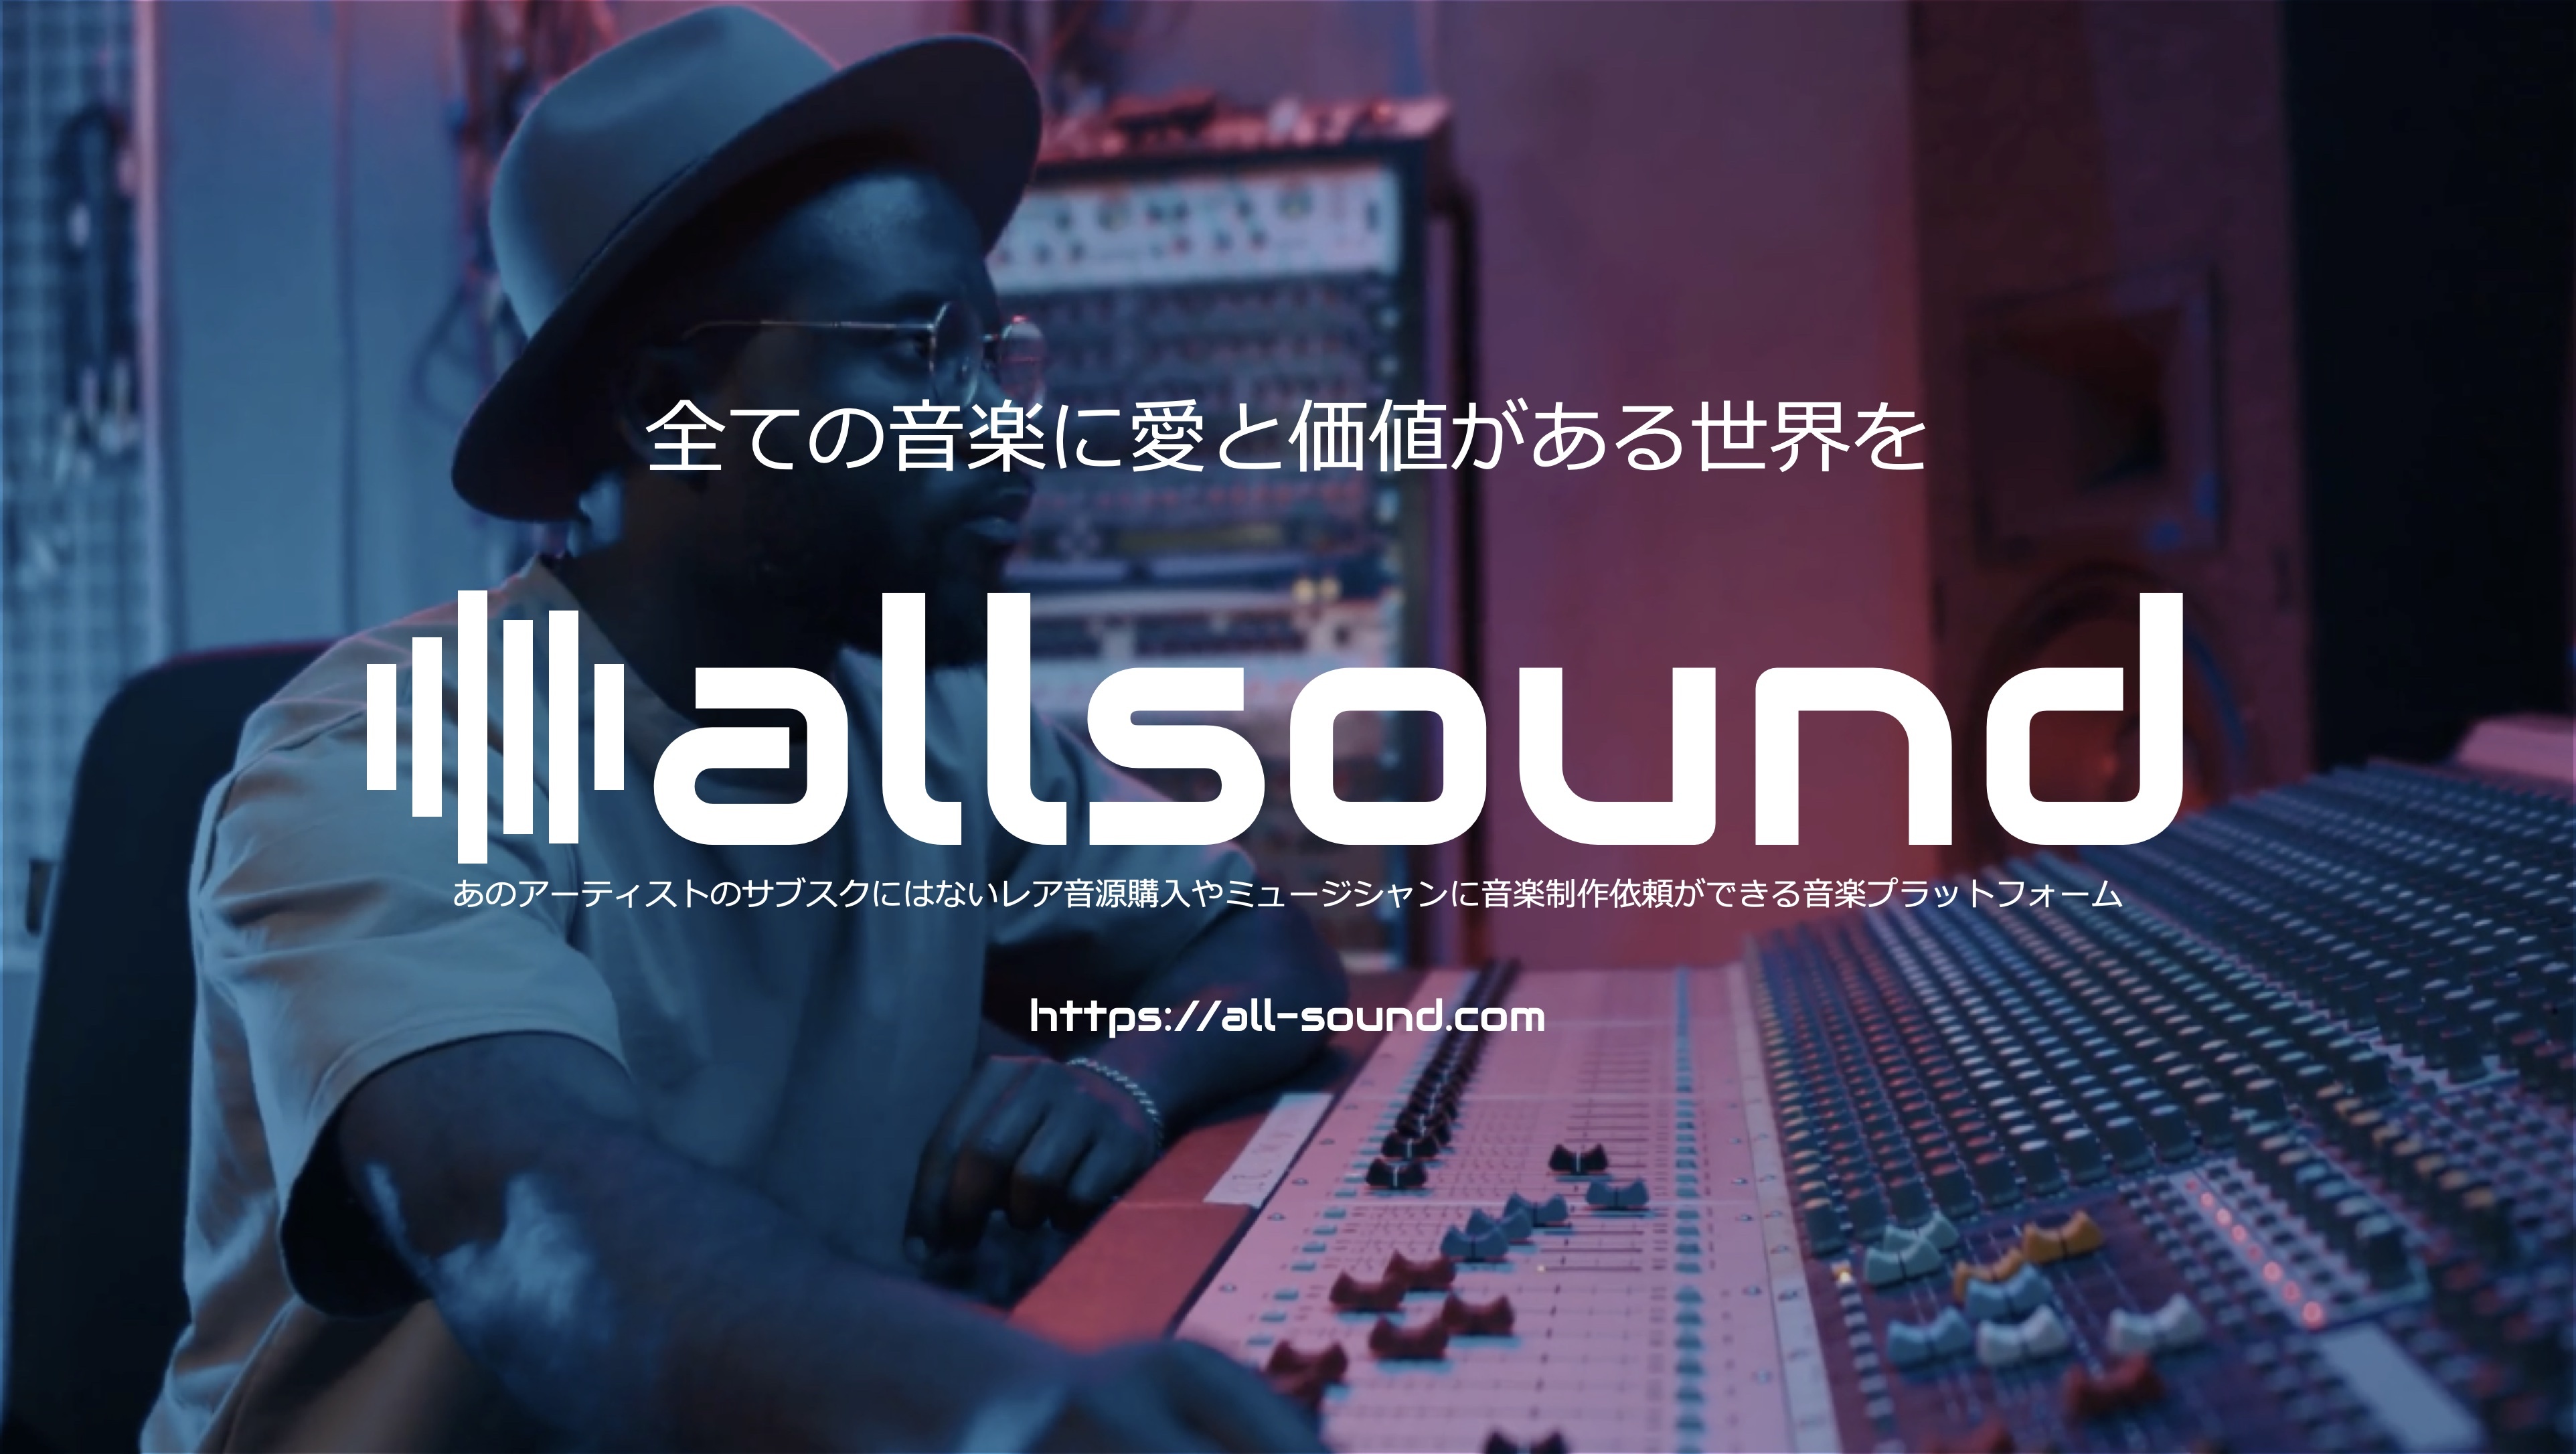 アーティストのサブスクにはないレア音源販売や、
プロミュージシャンが音楽制作受注ができる
音楽プラットフォーム“allsound”2023年2月15日スタート！
第一弾参加アーティスト募集中